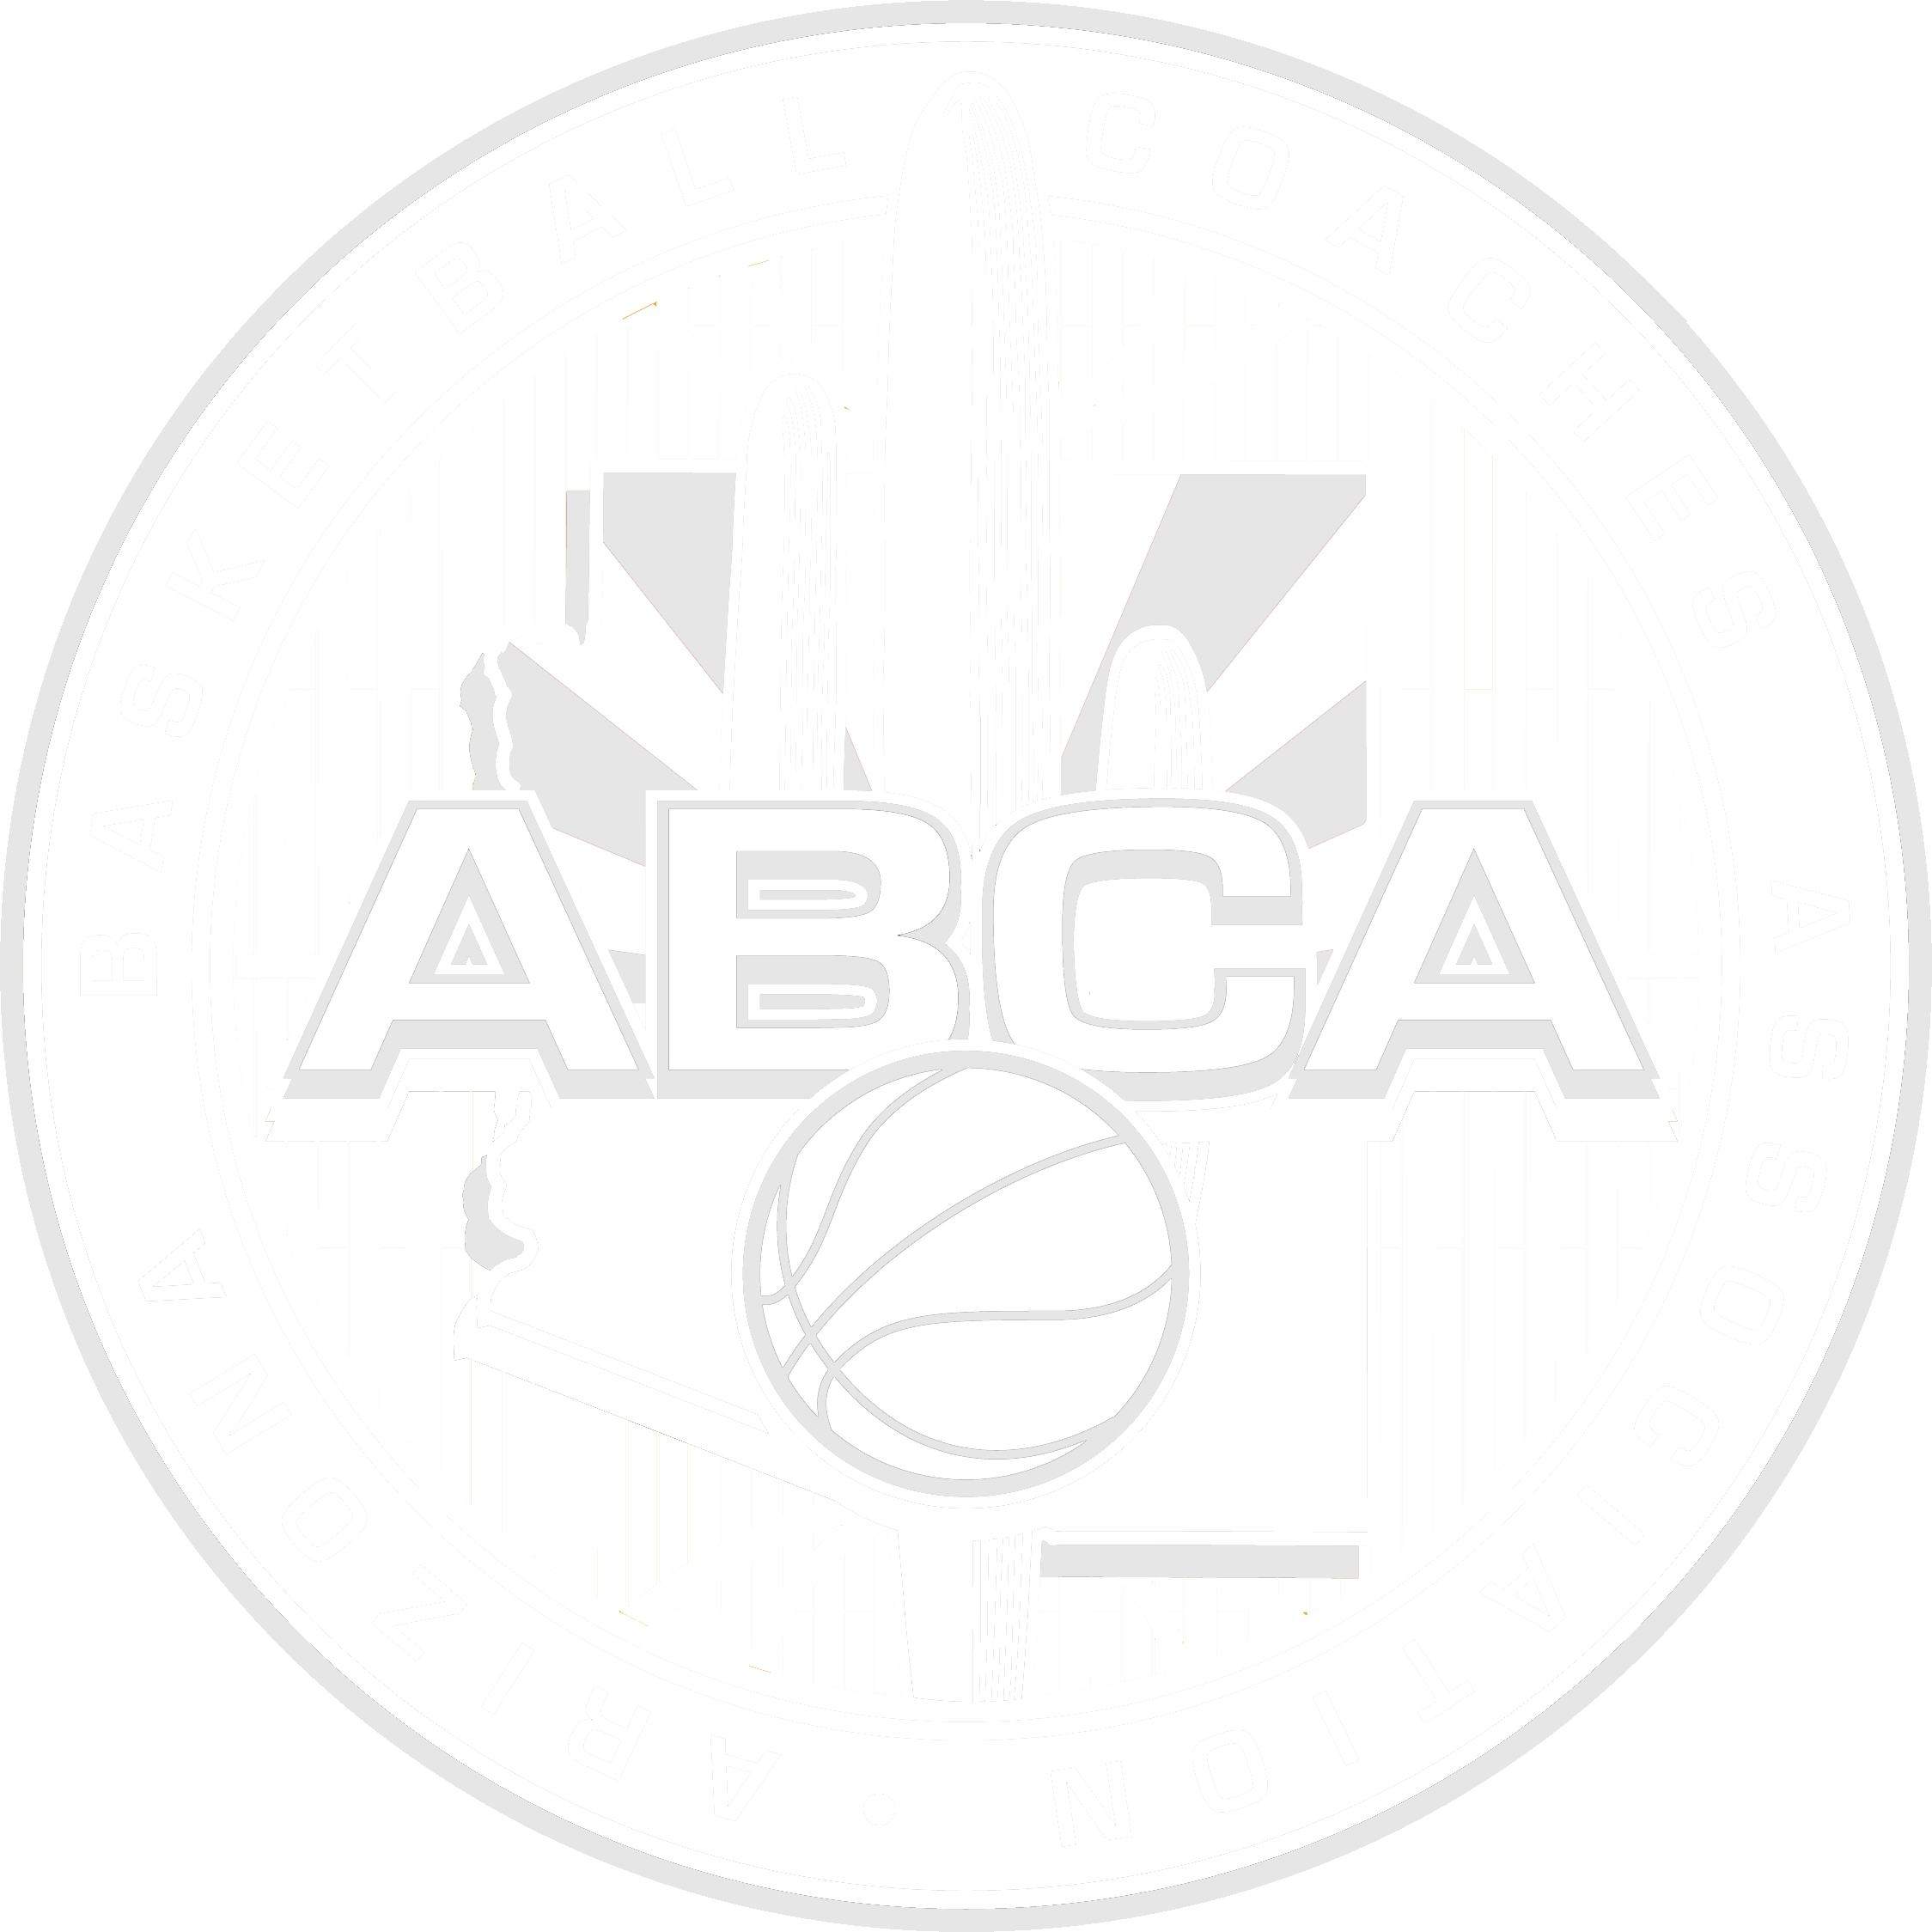 ABCA logo_White_No Fill